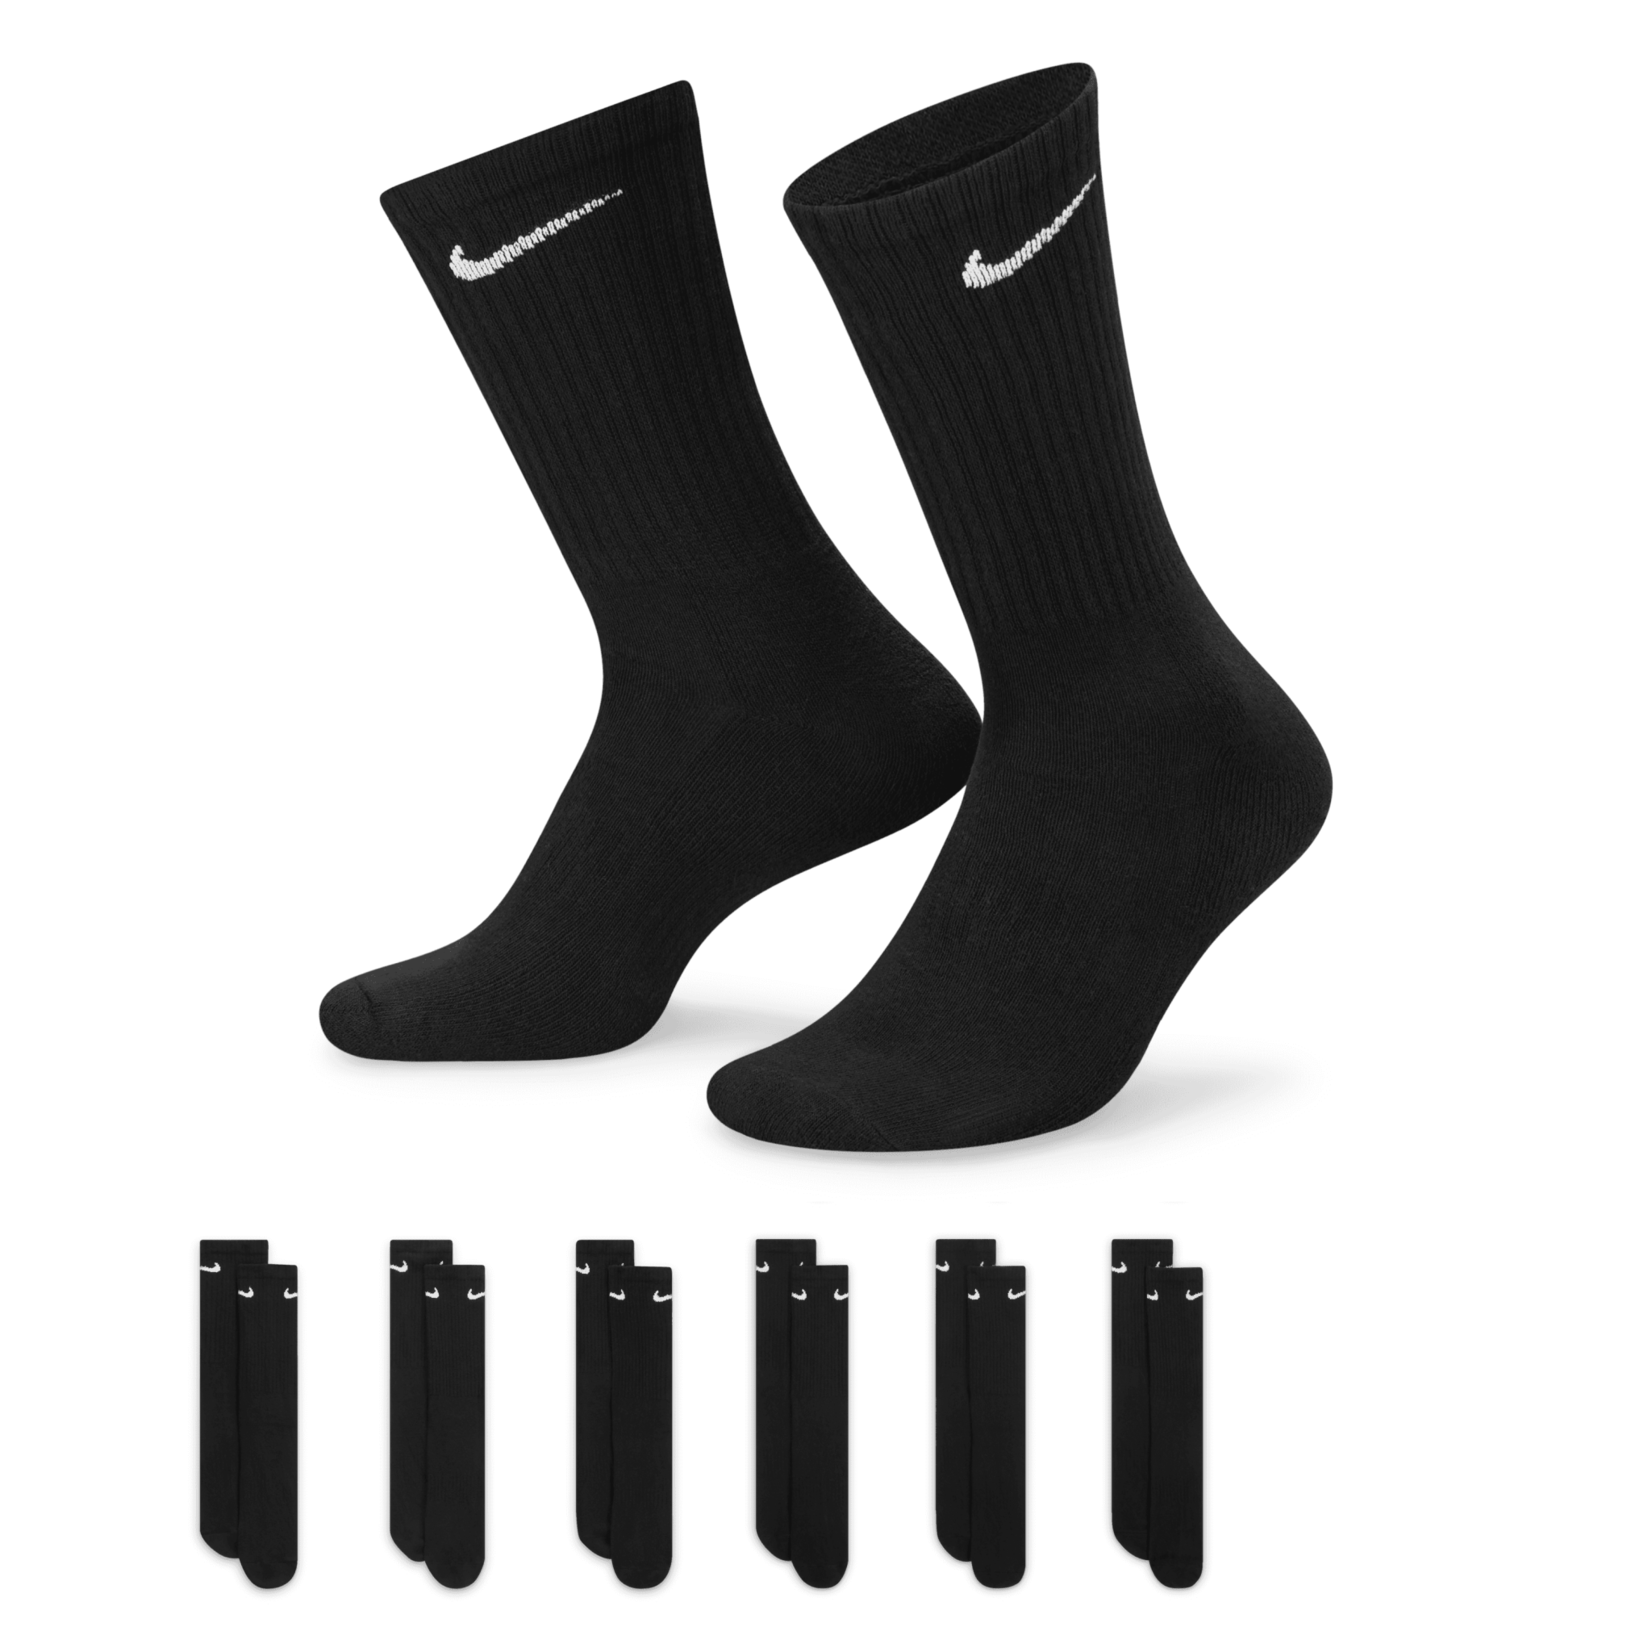 Nike Nike Everyday Cushioned Training Crew Socks (6 Pairs)